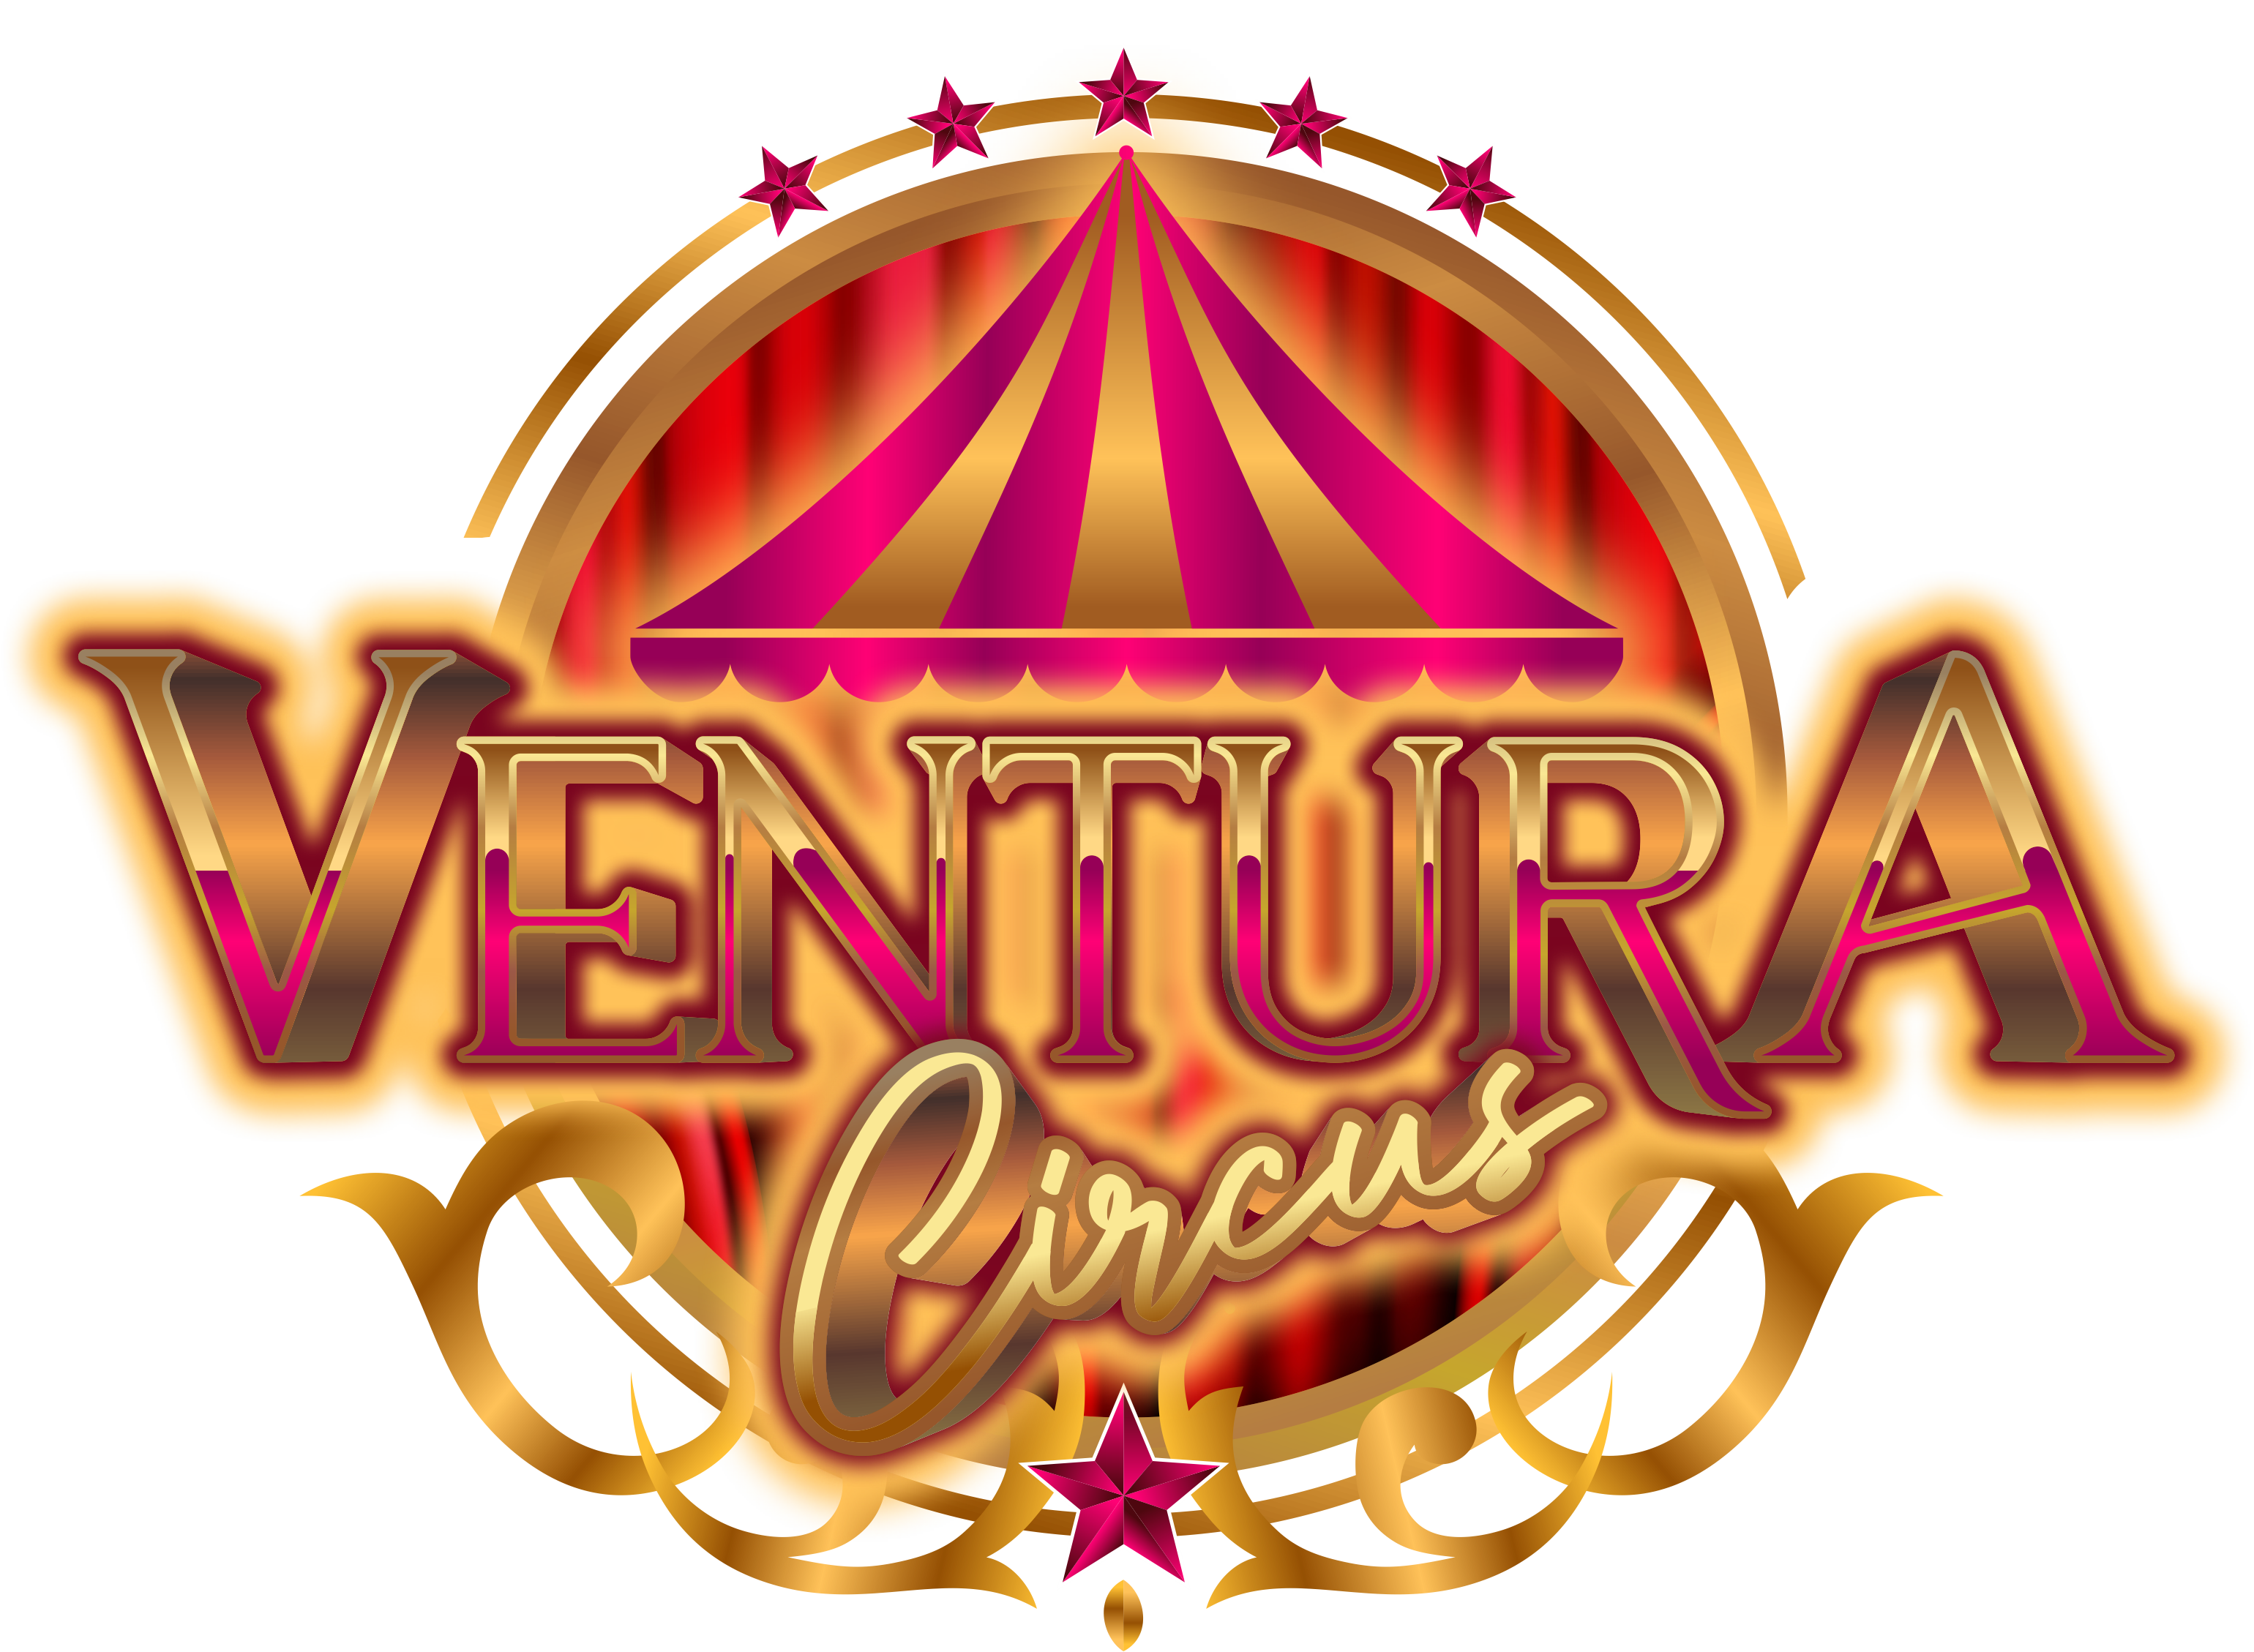 Ventura Star Circus logo